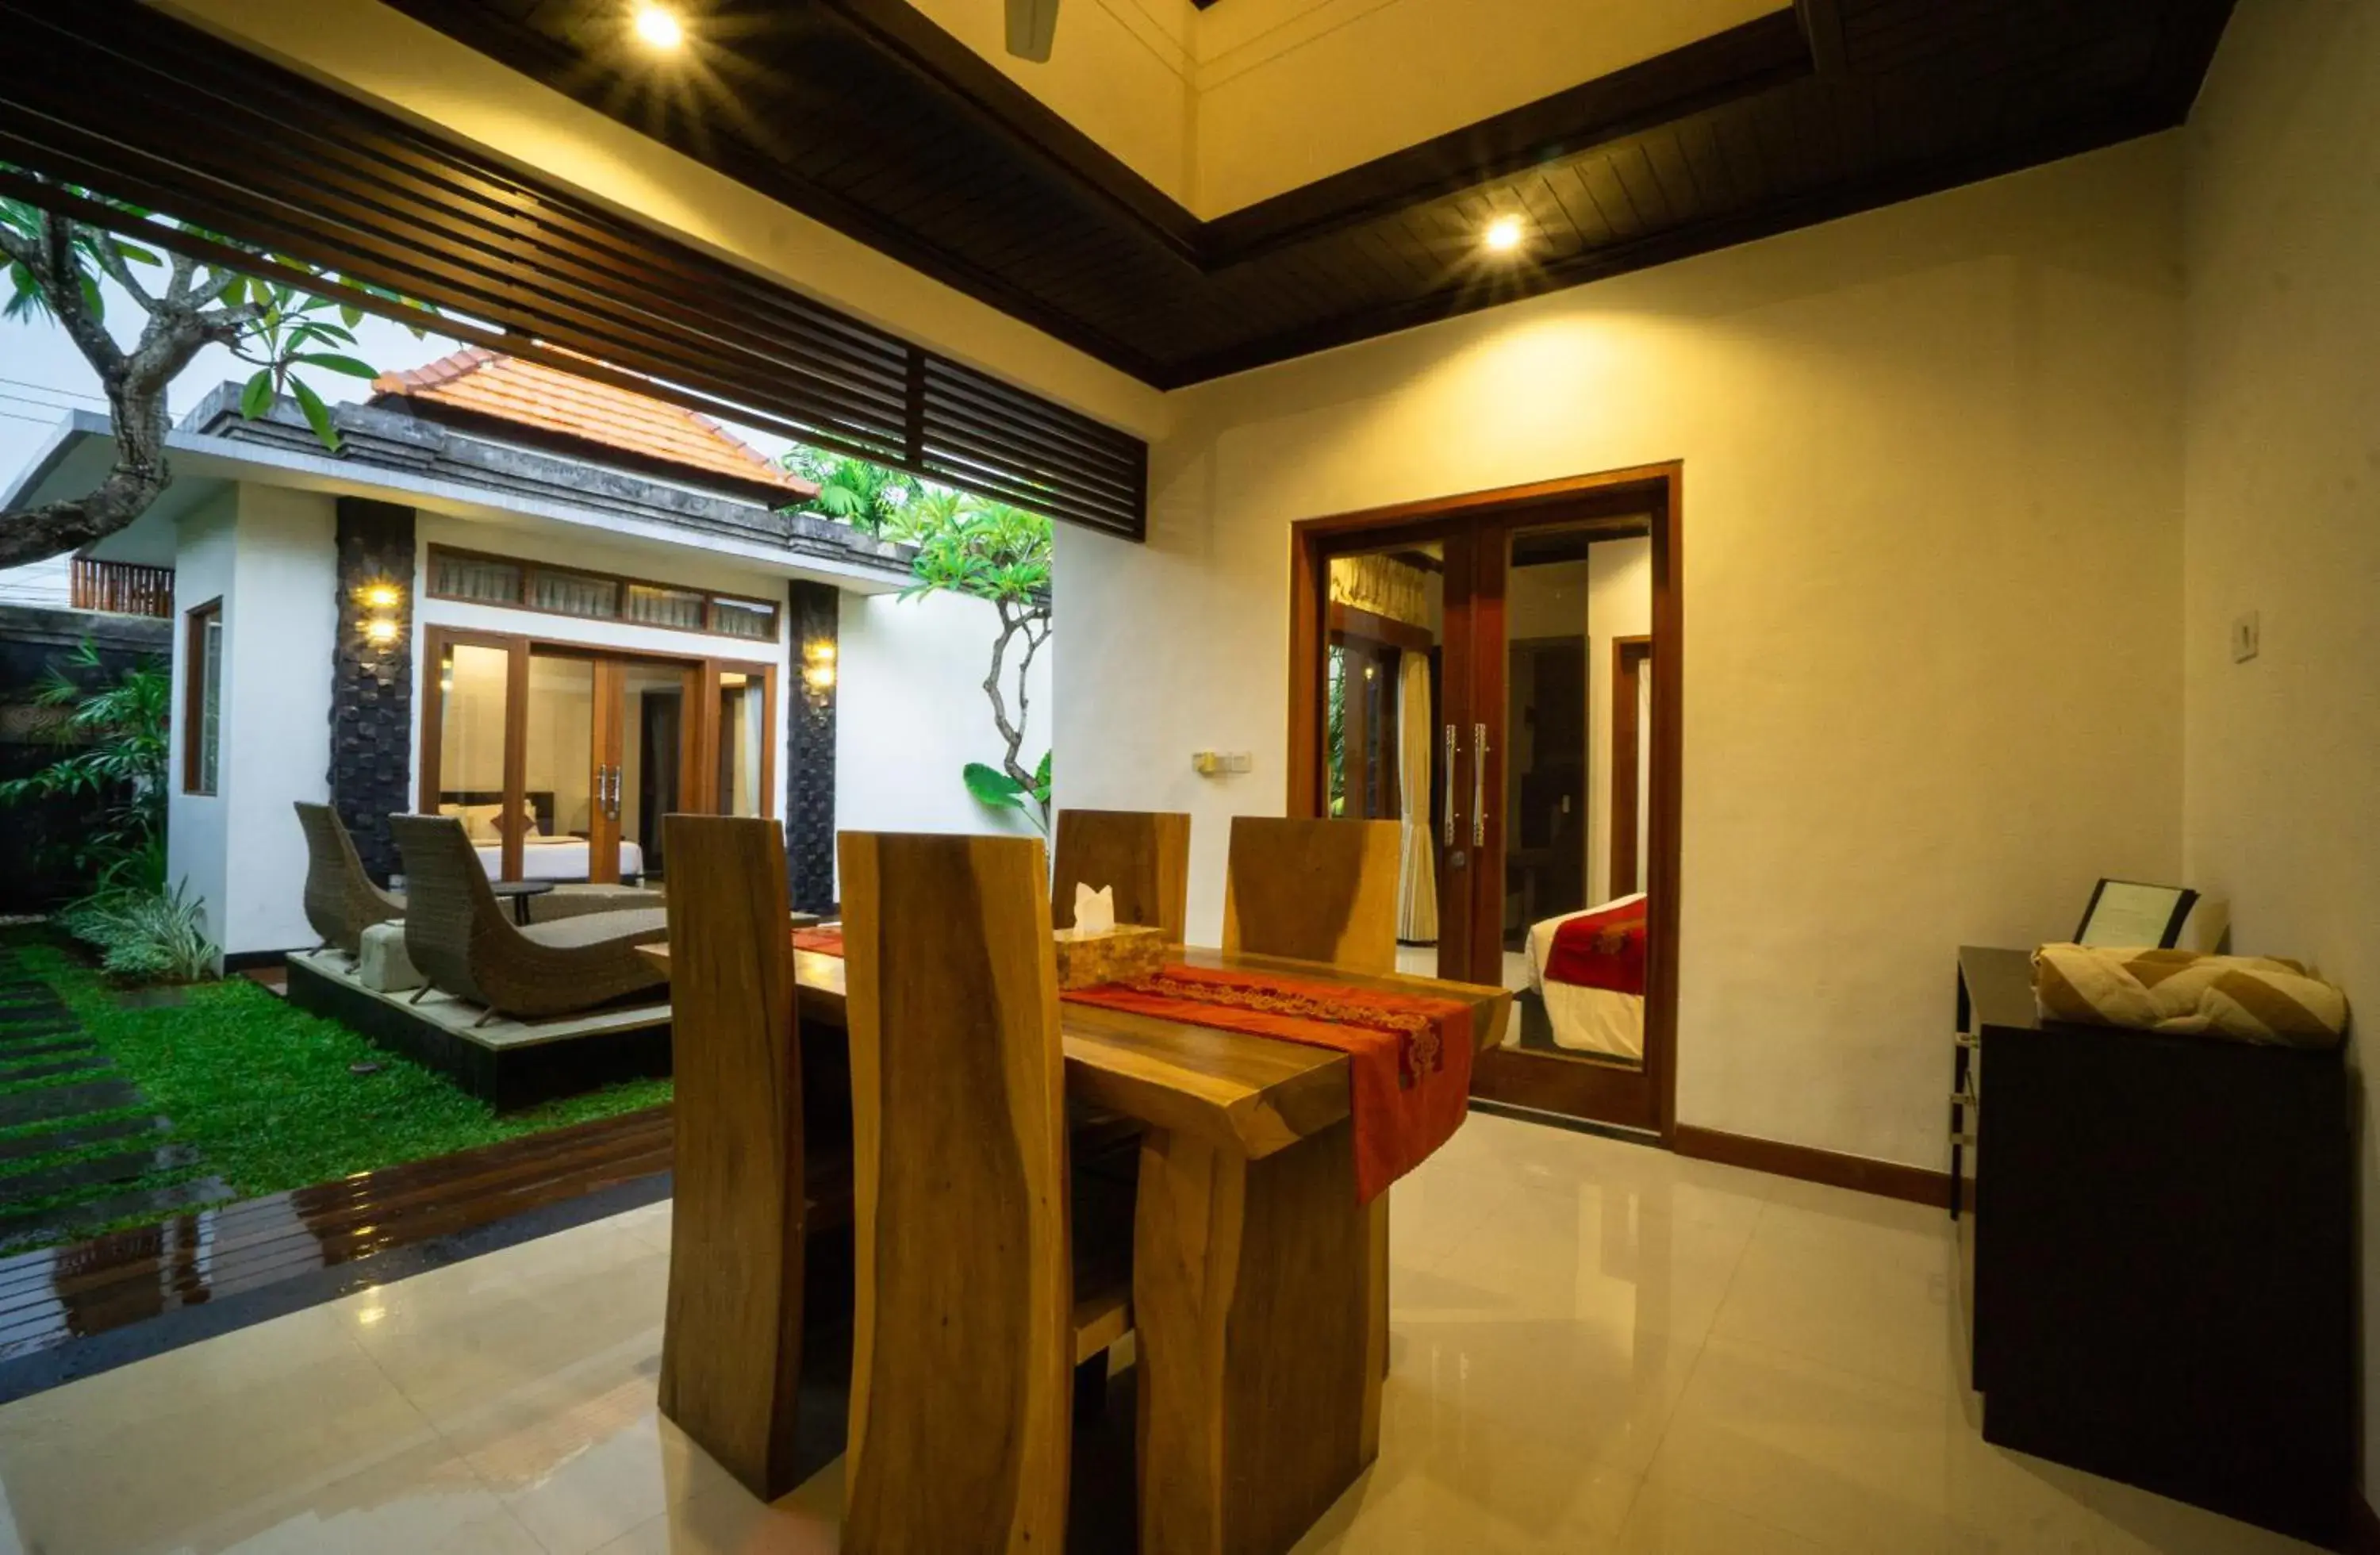 Property building, Dining Area in Kayu Suar Bali Luxury Villas & Spa